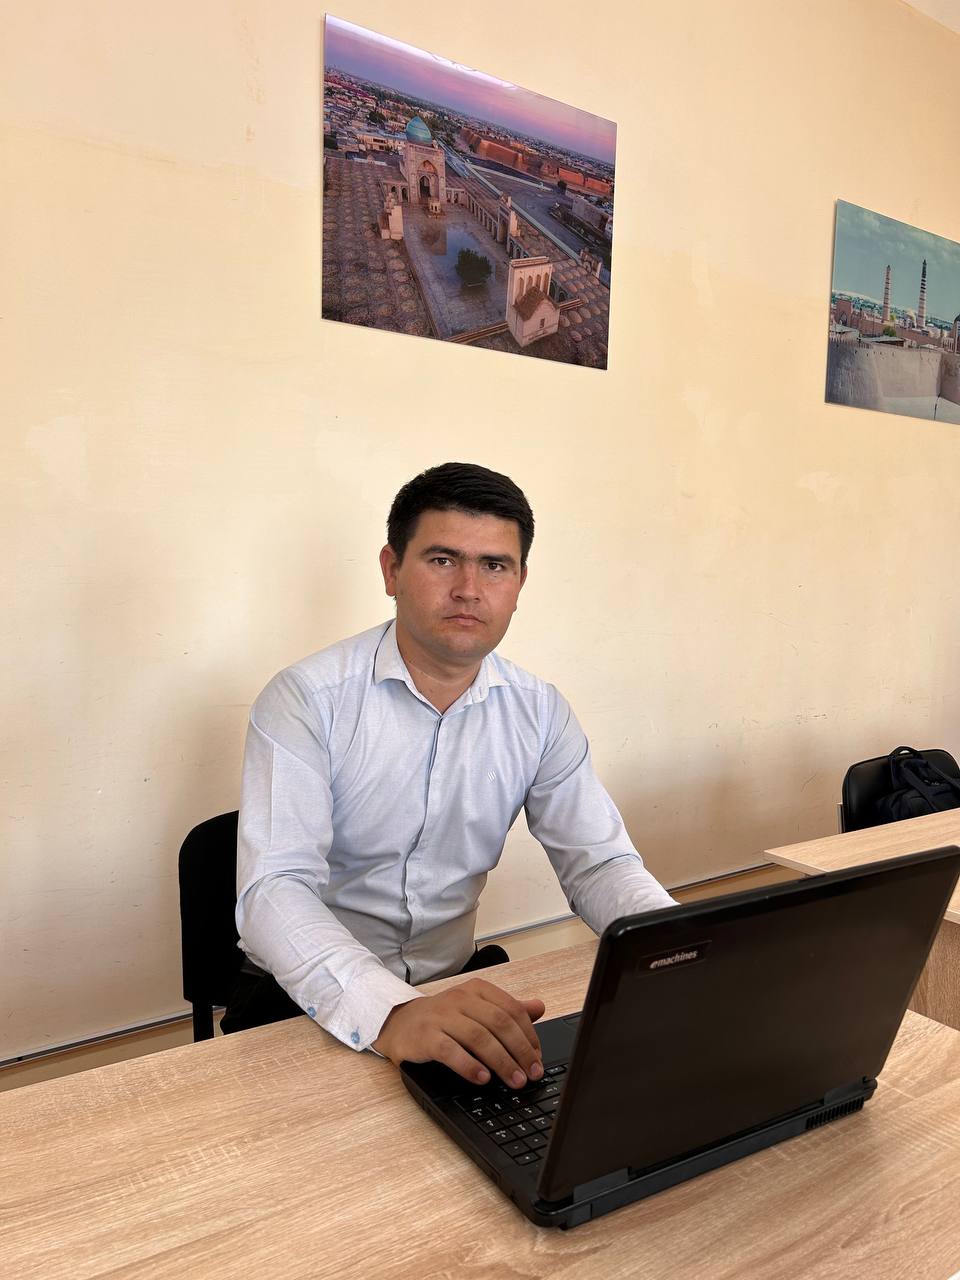 Urganch Davlat Universiteti-Qurbanbayev Shuhrat 